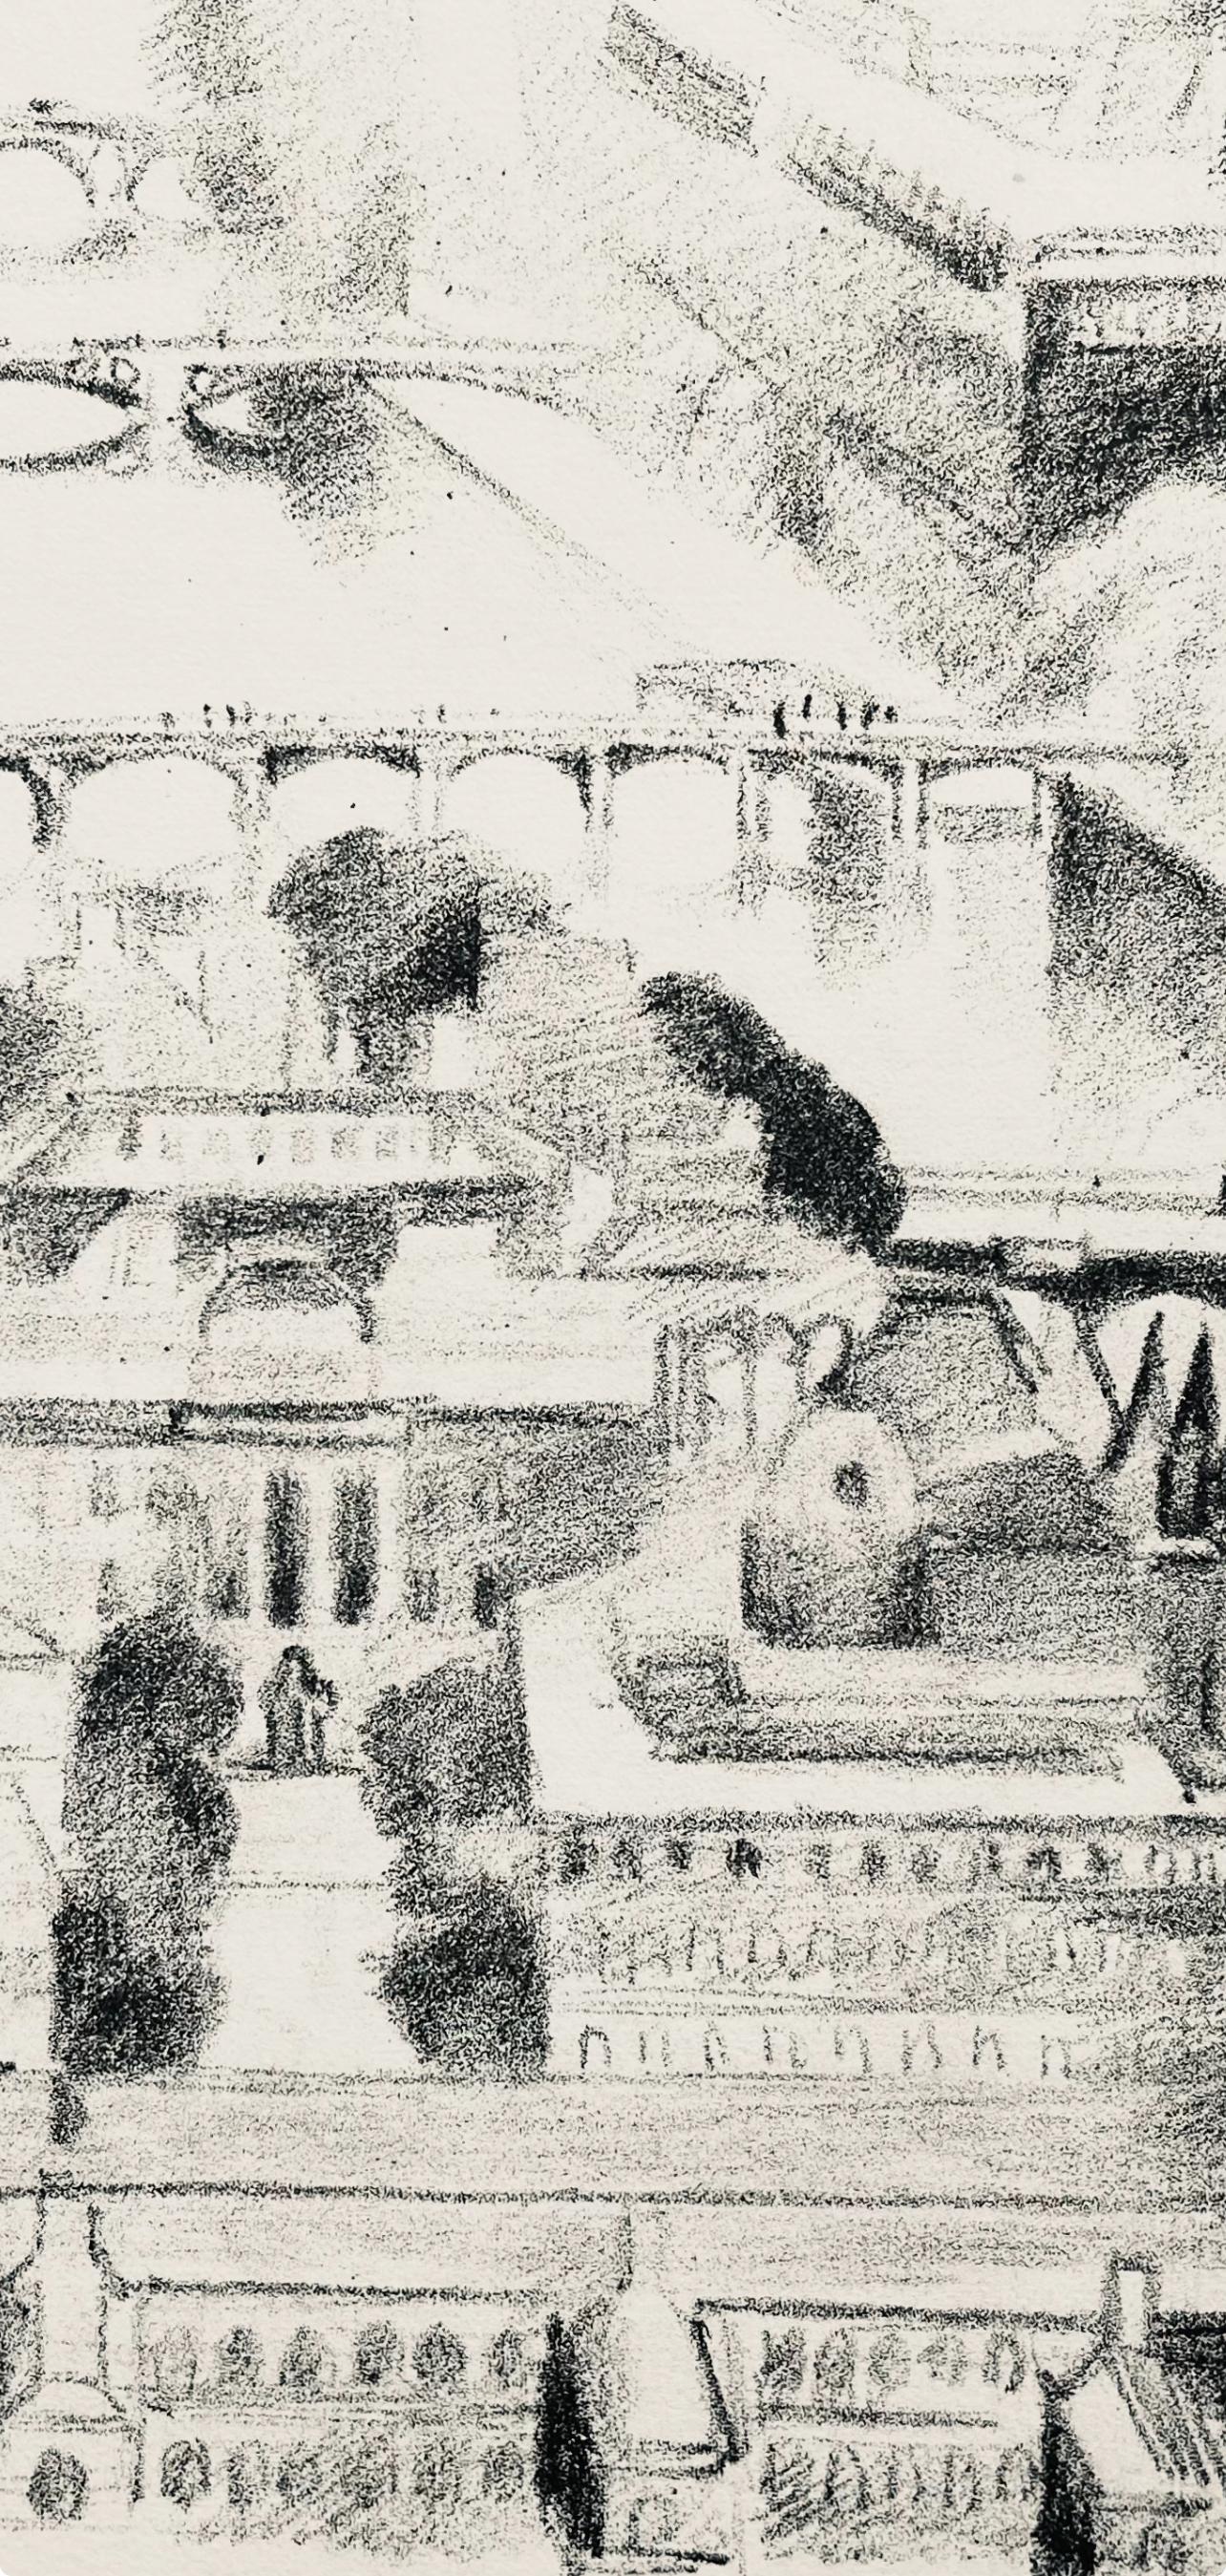 Delaunay, La Seine aux quatre ponts (Habasque 720-728), Allo! Paris! (after) - Modern Print by Robert Delaunay